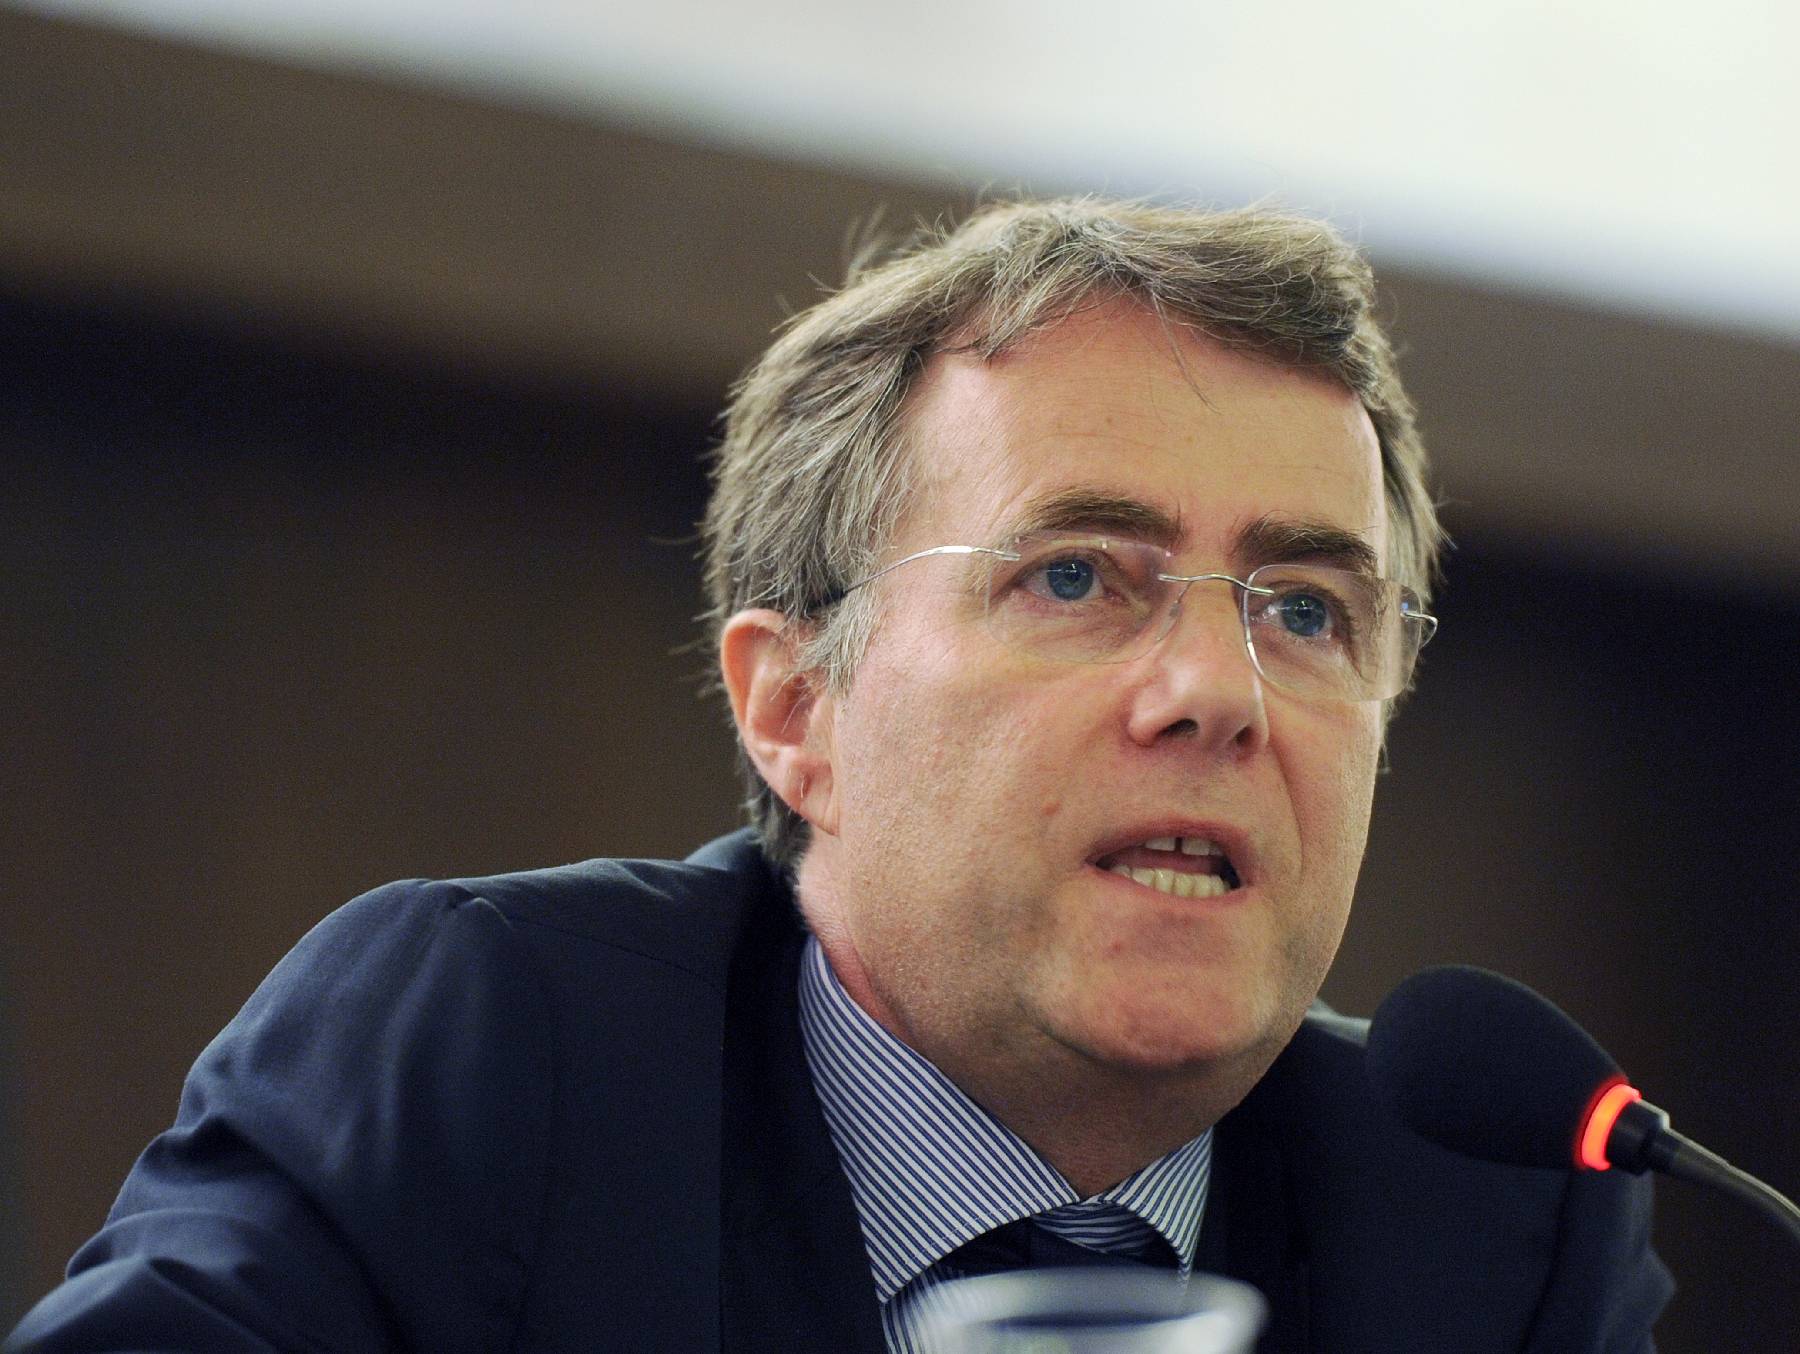 Le maire d'Orléans Serge Grouard quitte le parti Les Républicains